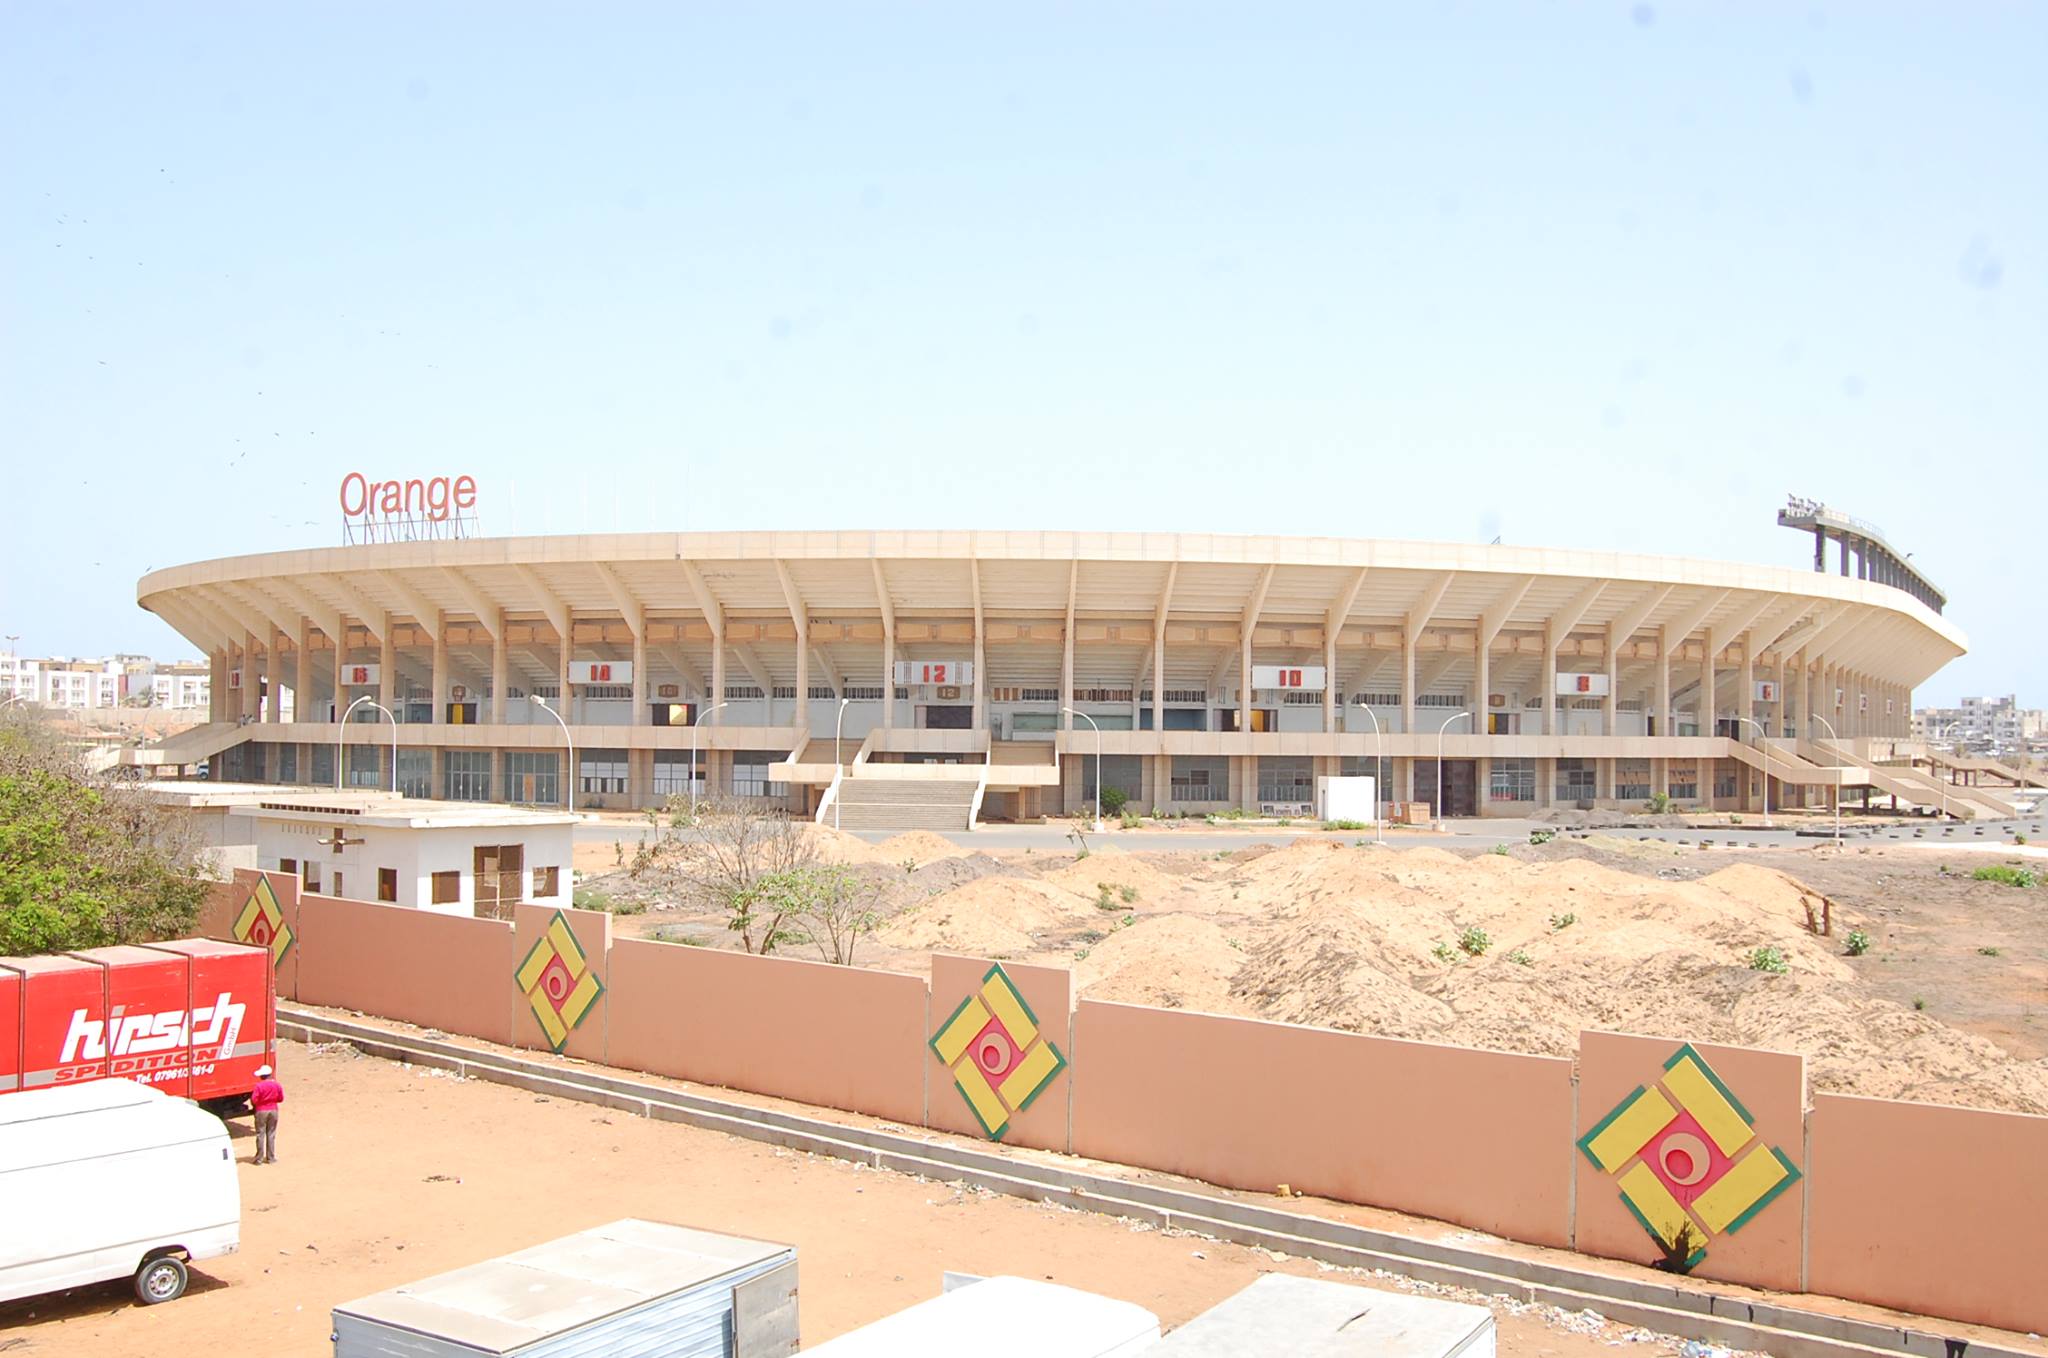 Sénégal-Cap vert : plus de 67 millions FCFA tirés de la vente des billets.